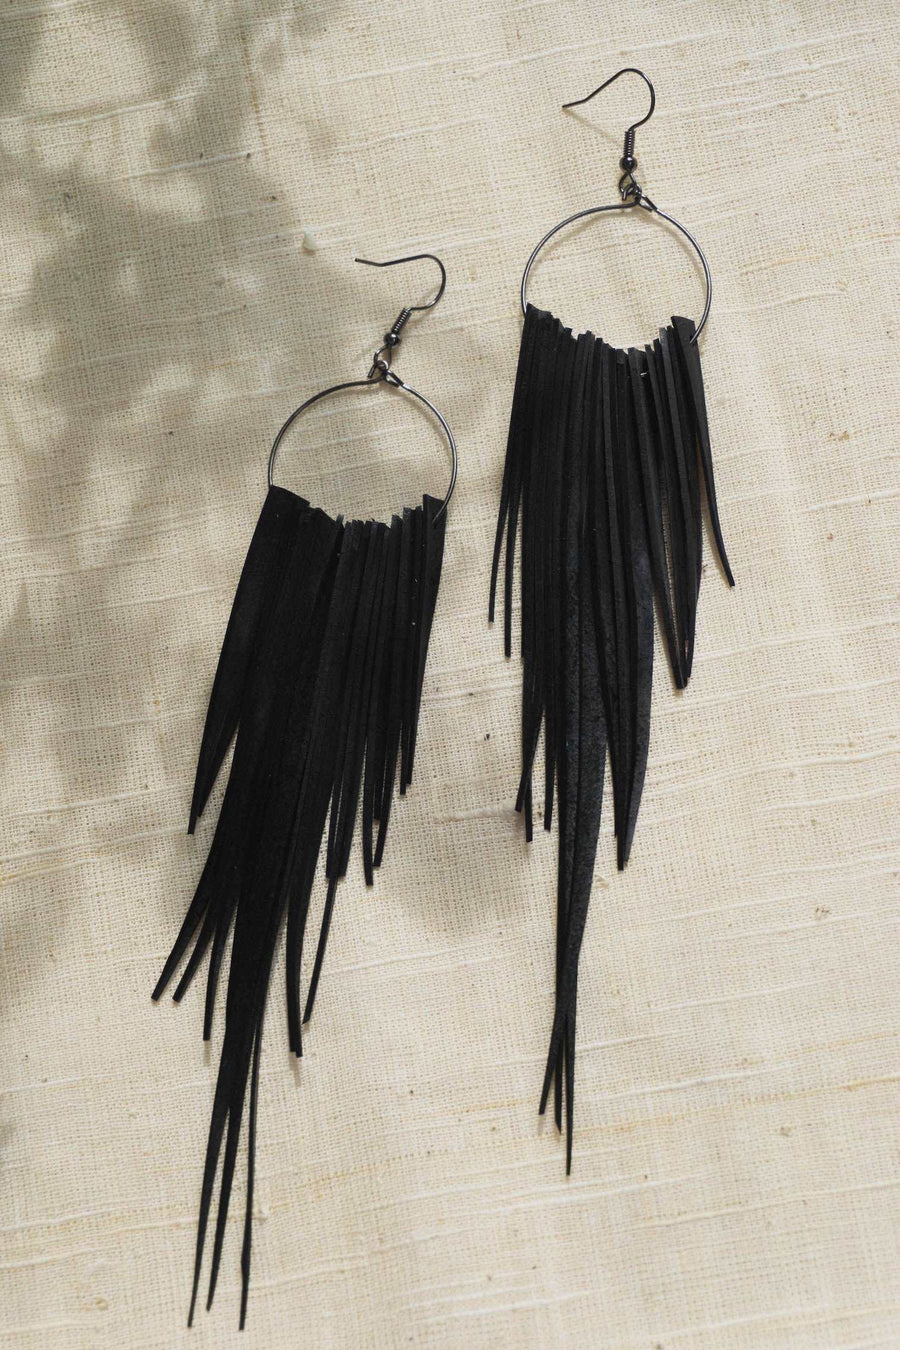 long bold black recycled bike inner tube earrings by Laura Zabo